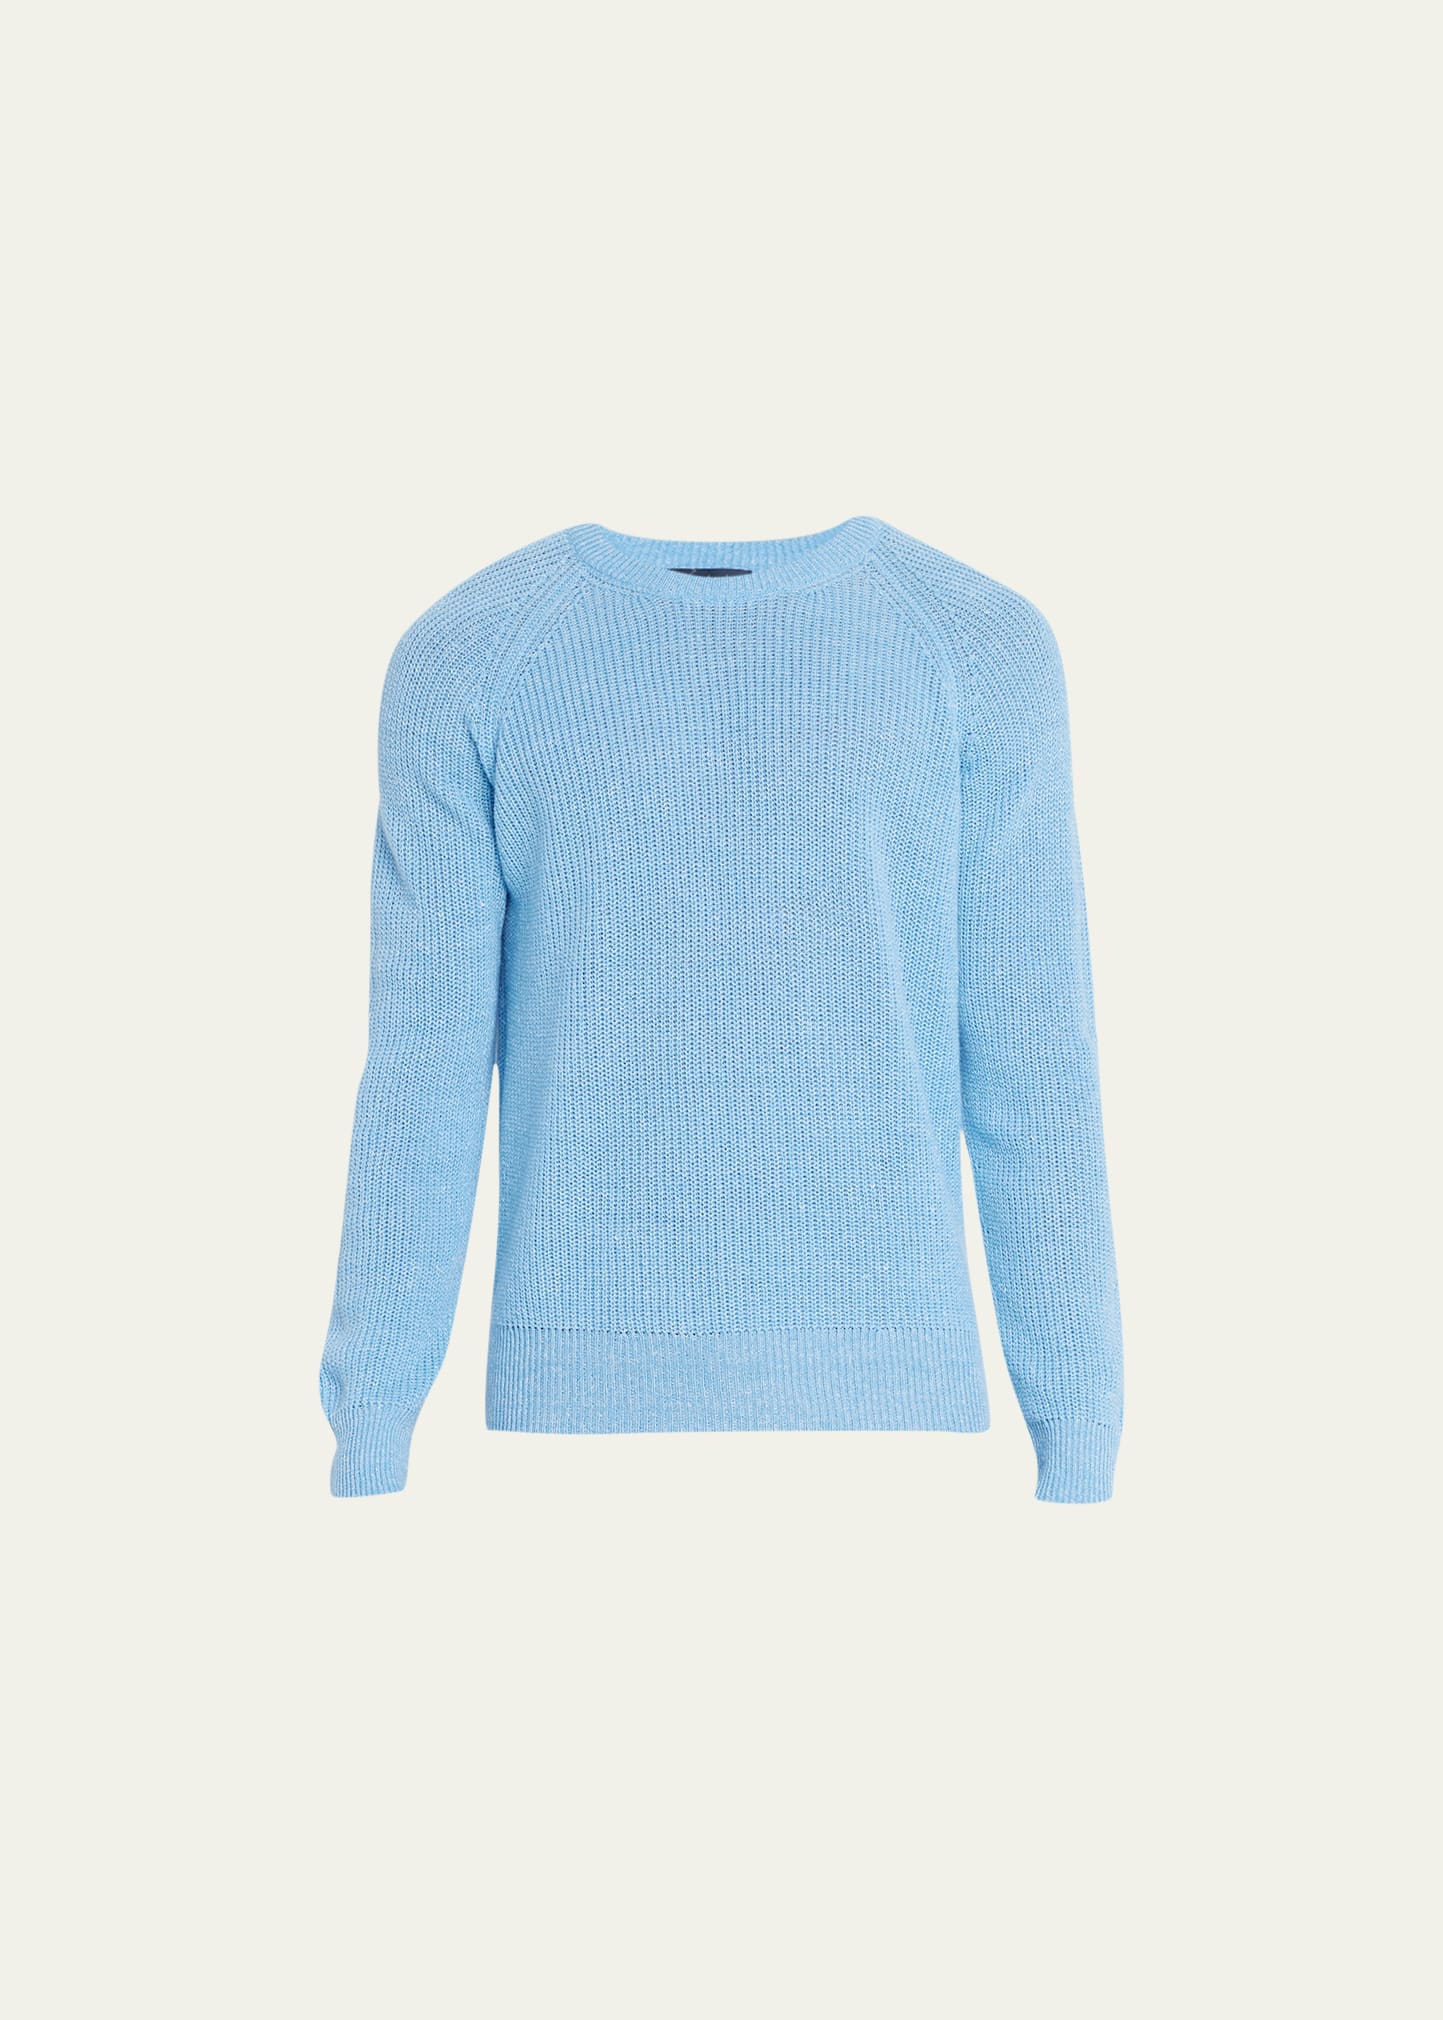 Bergdorf Goodman Men's Cashmere-Linen Knit Crewneck Sweater